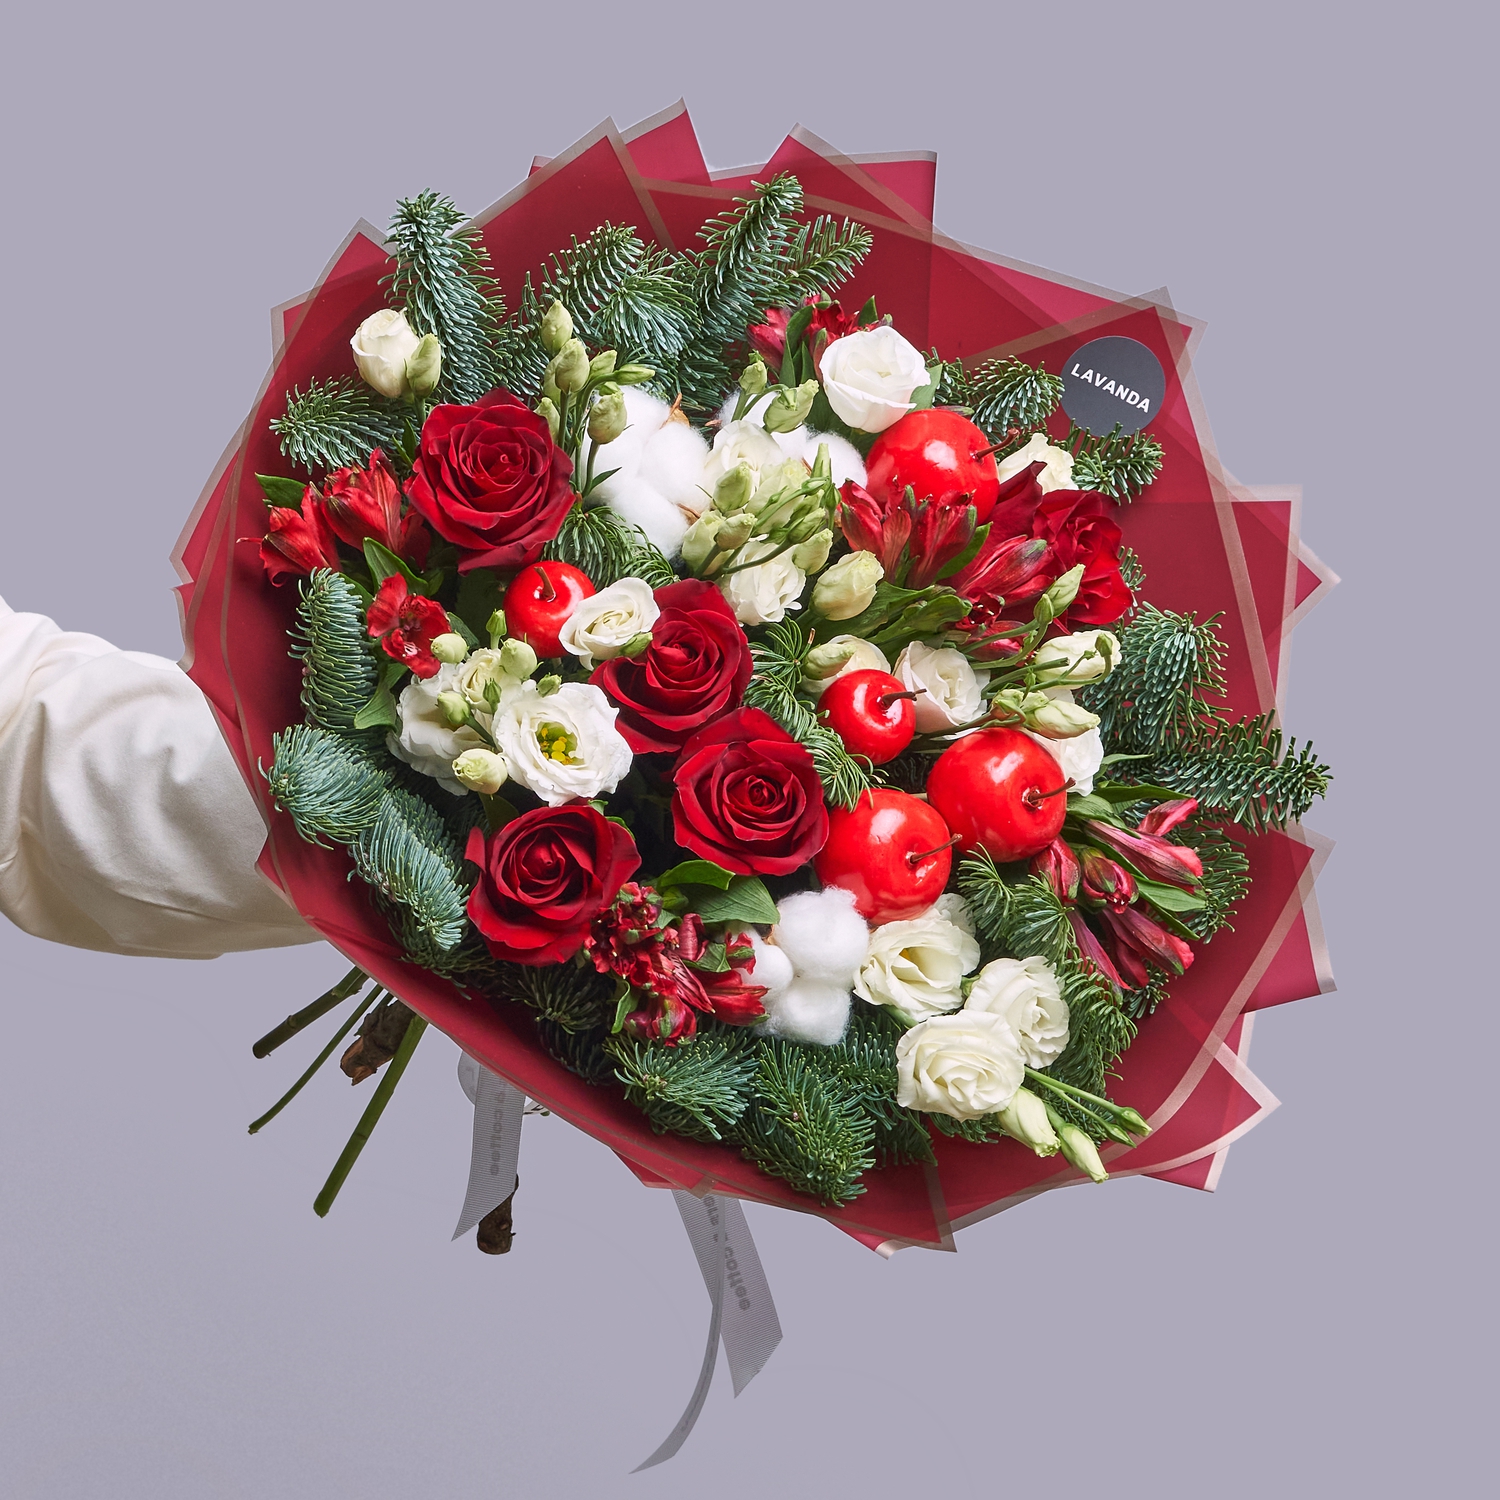 Зимний букет красных роз с хлопком и нобилисом - купить с доставкой в Омске  - Лаванда